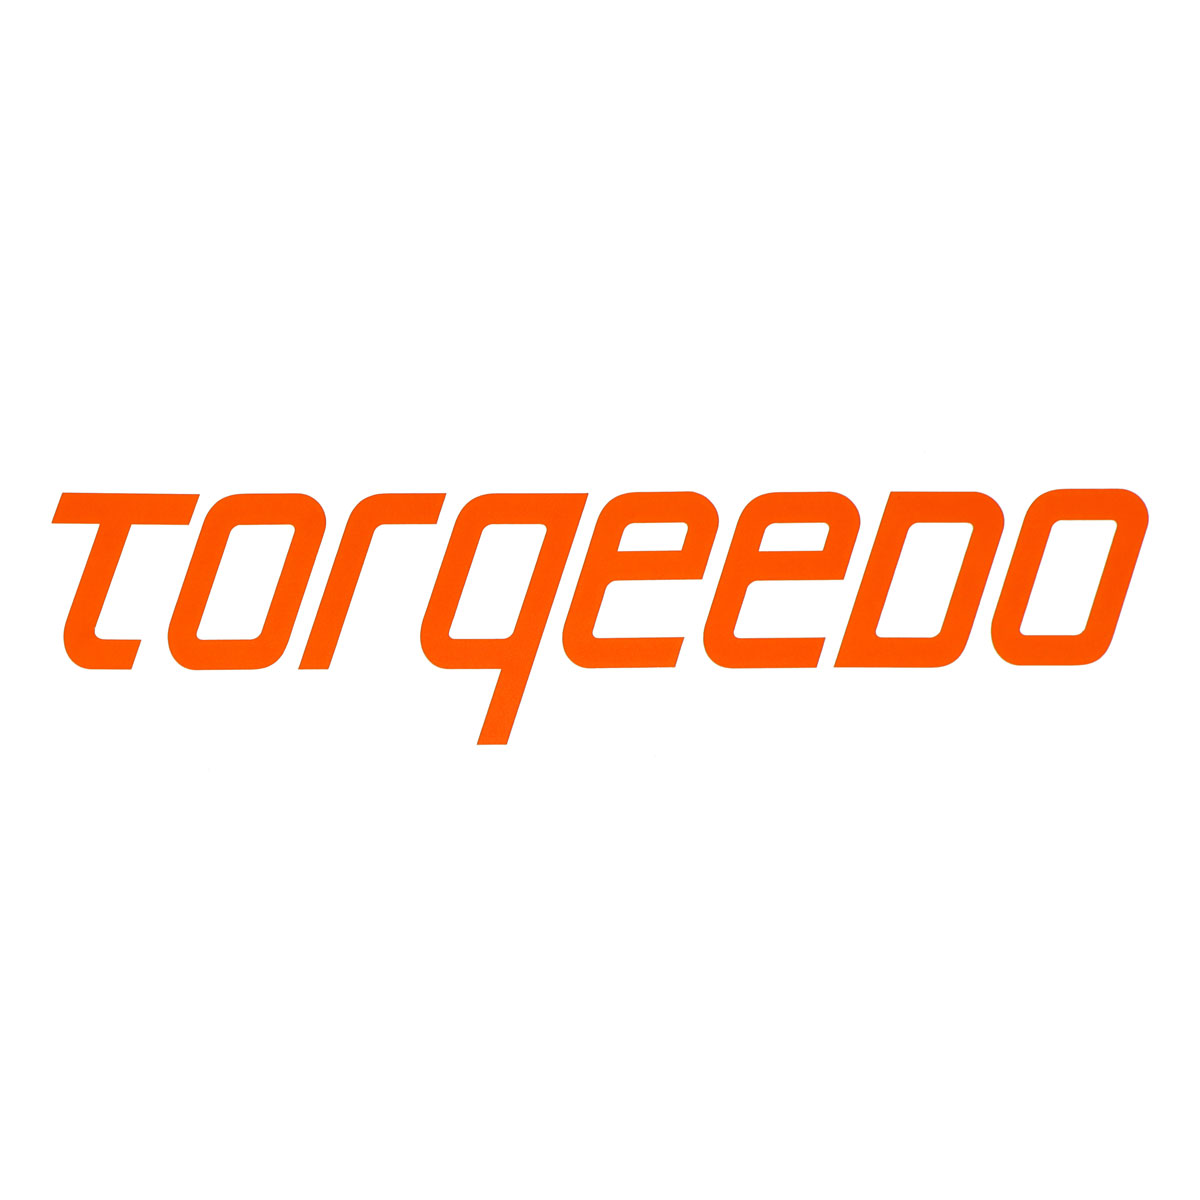 Torqeedo Sticker "Torqeedo" 2017 C10 SH